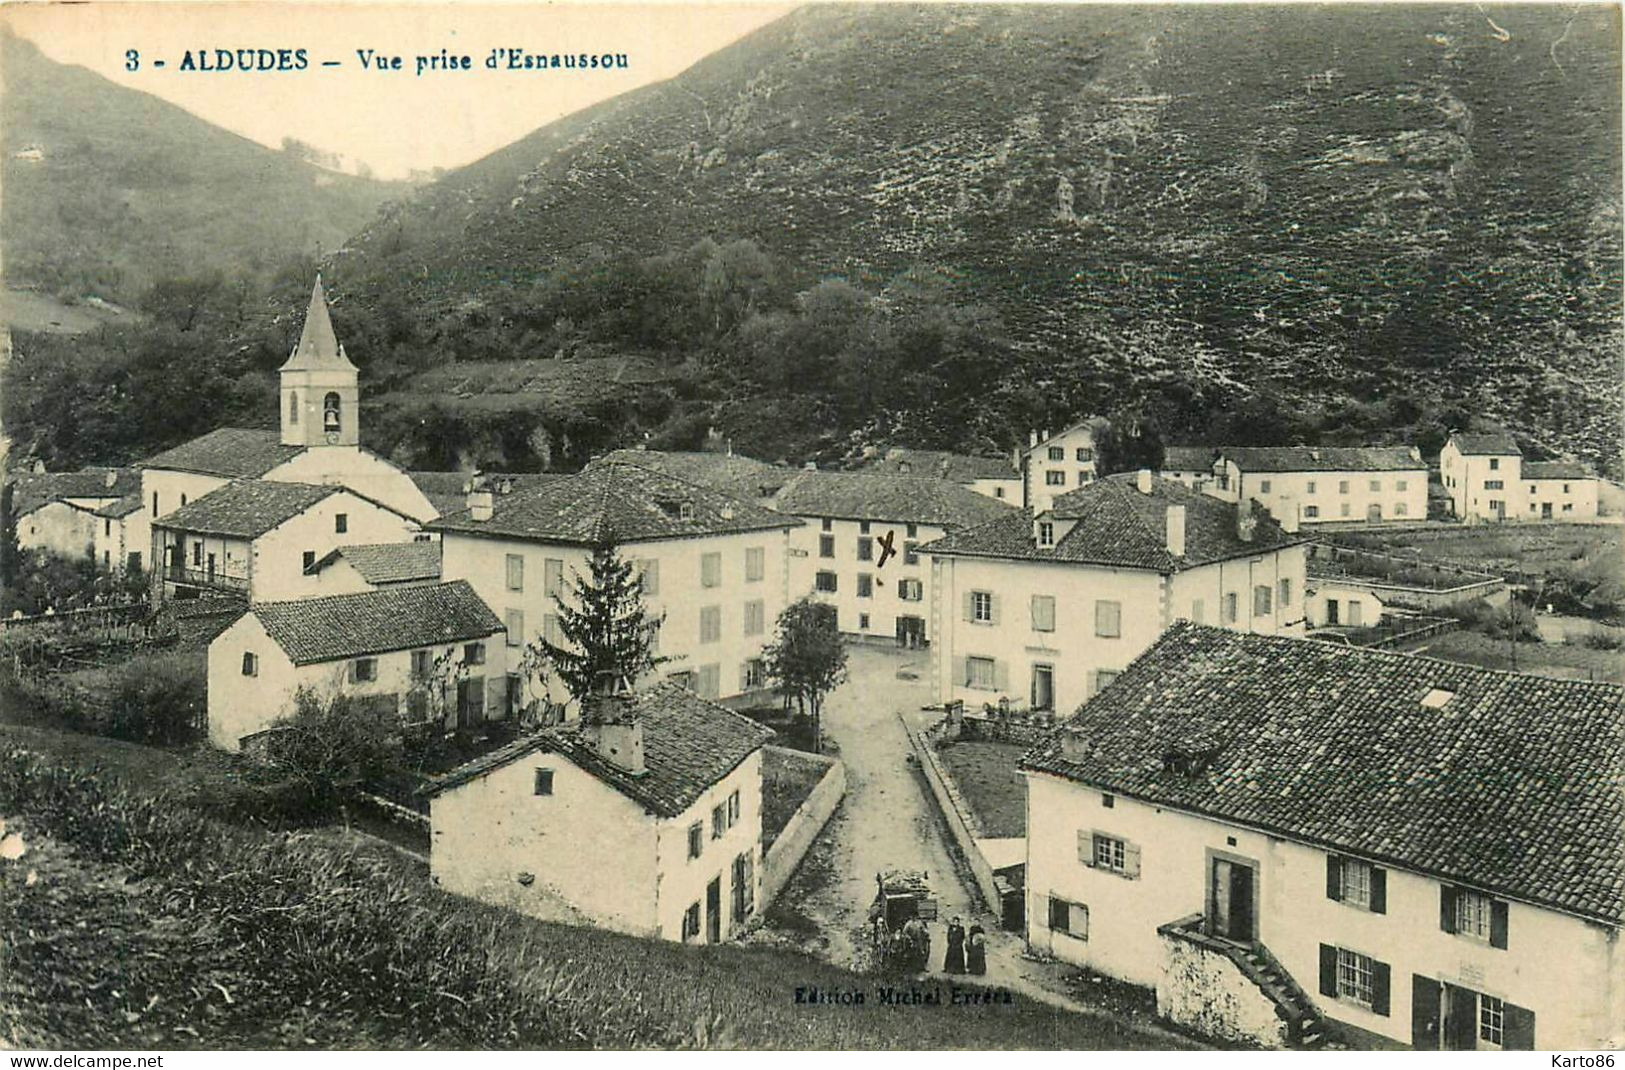 Aldudes * Vue Prise D'esnaussou * Panorama Du Village - Aldudes